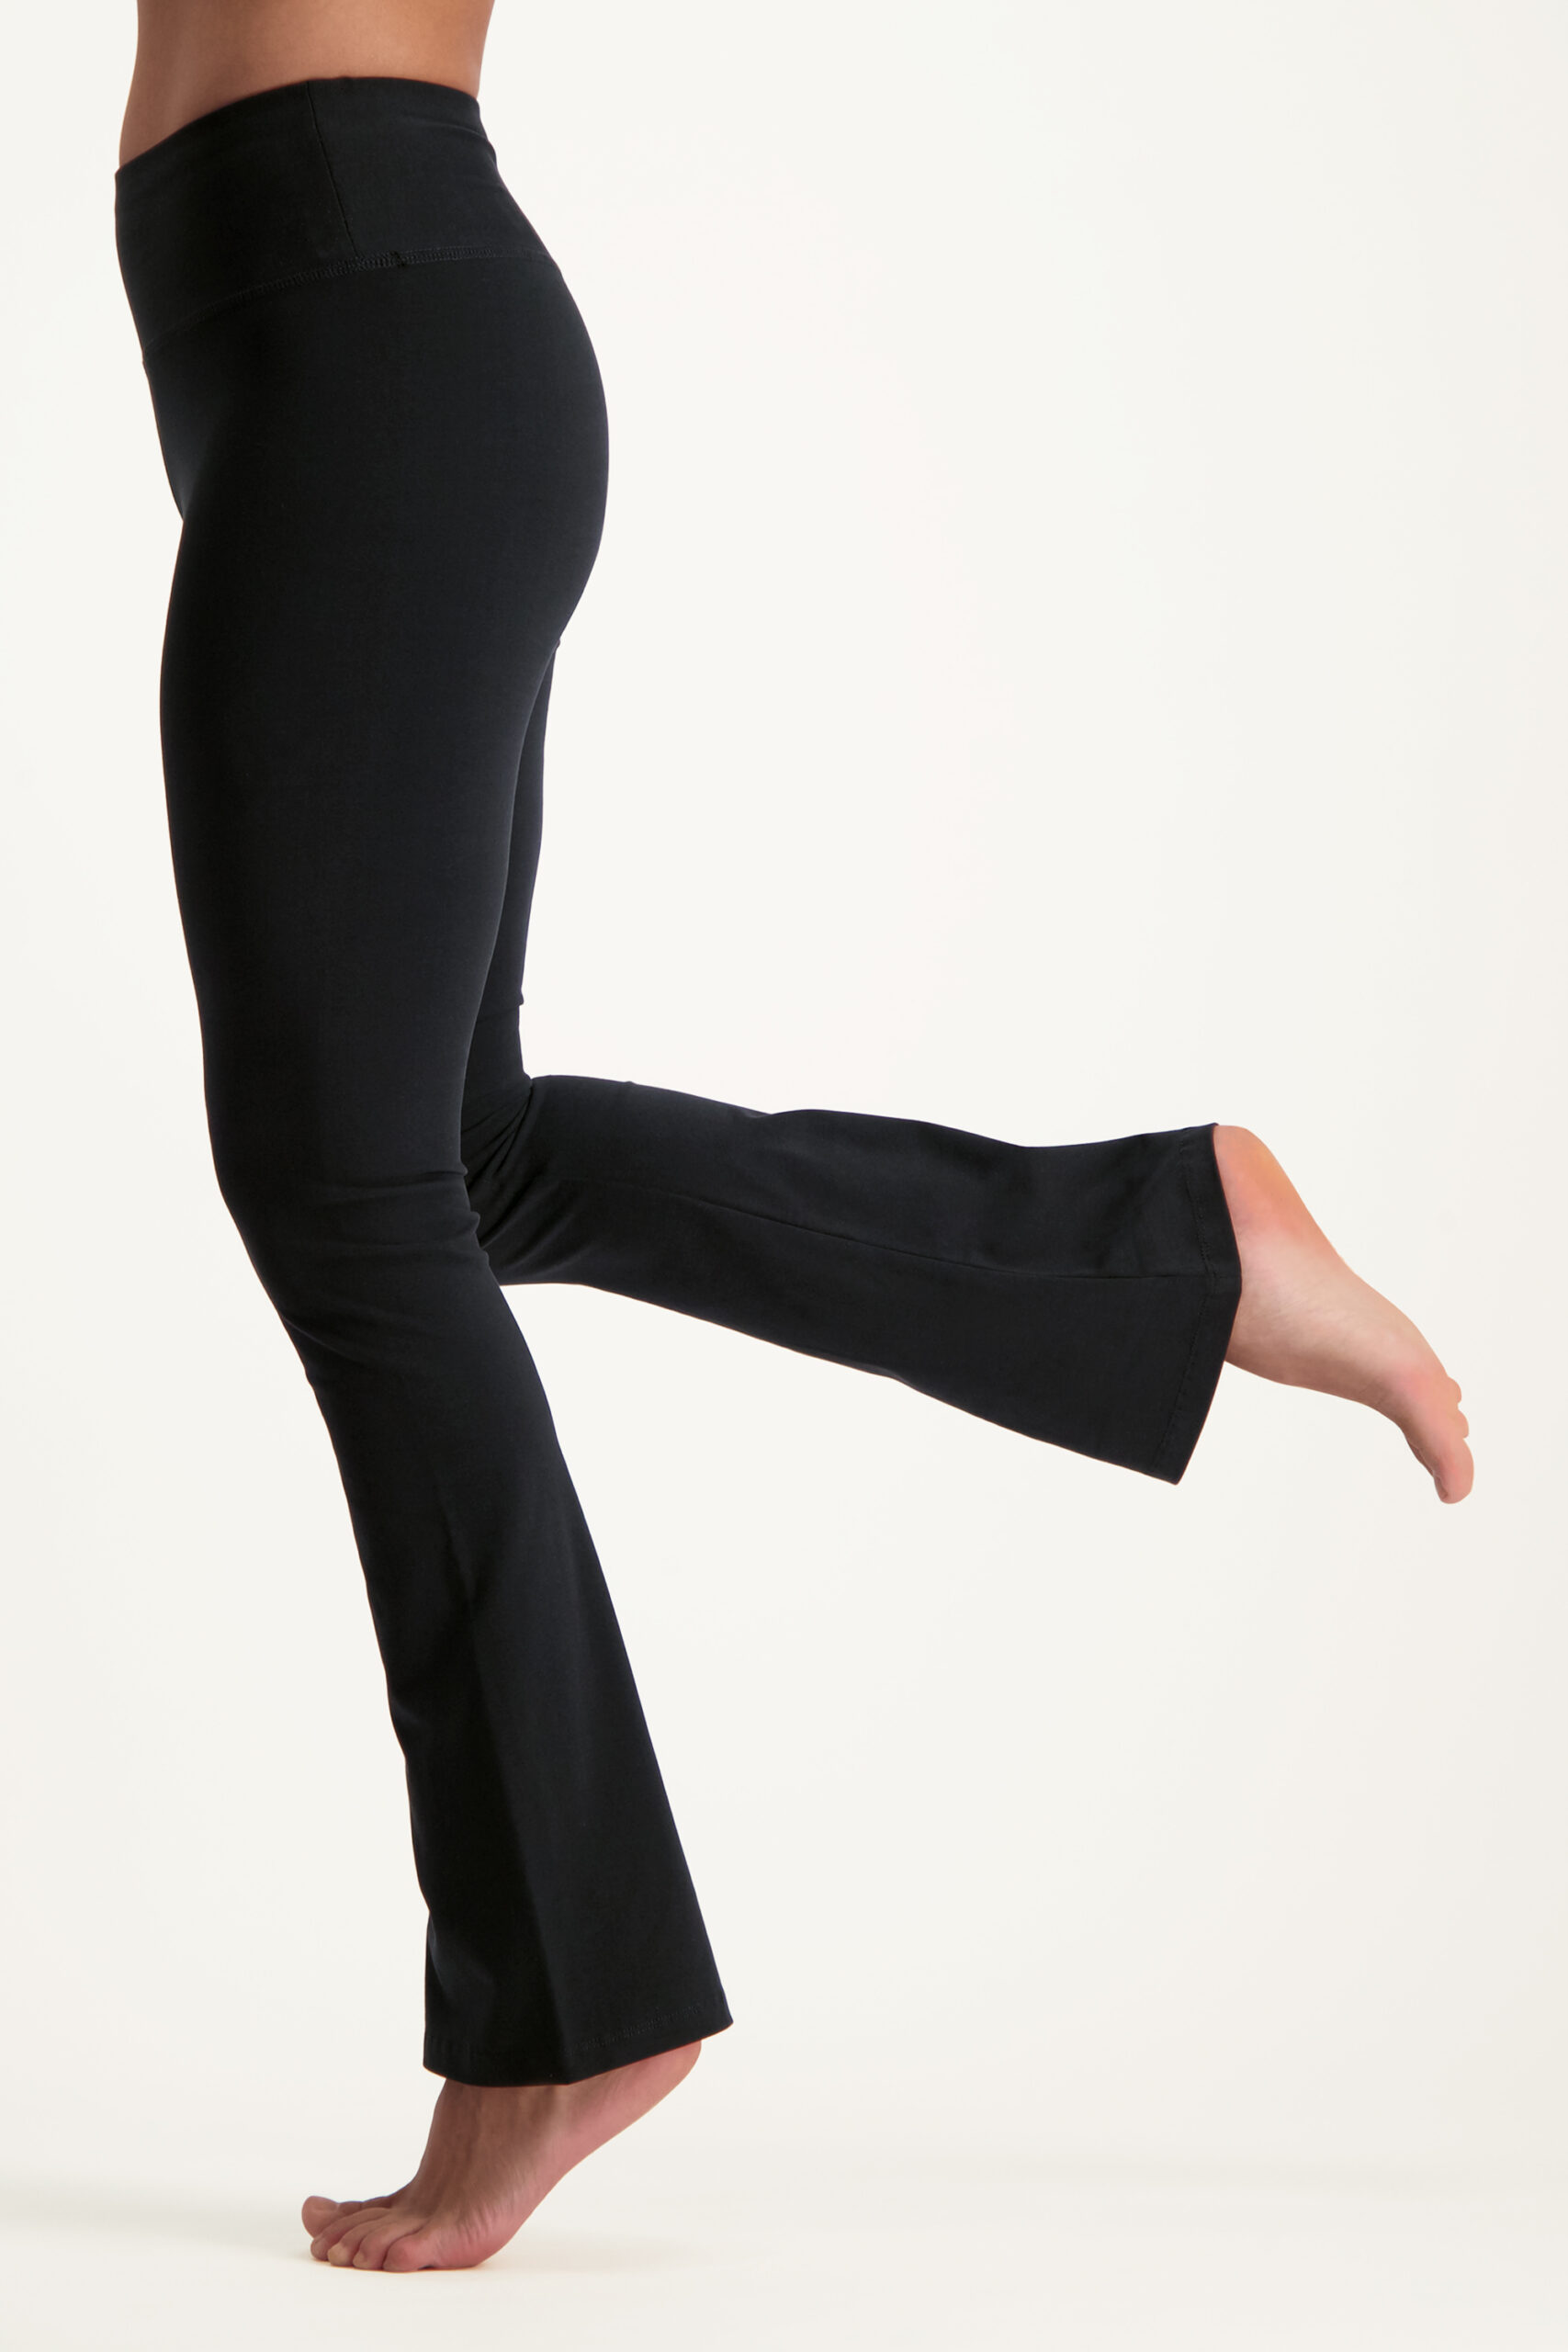 Yoga kleding voor dames, Yoga broeken & tops